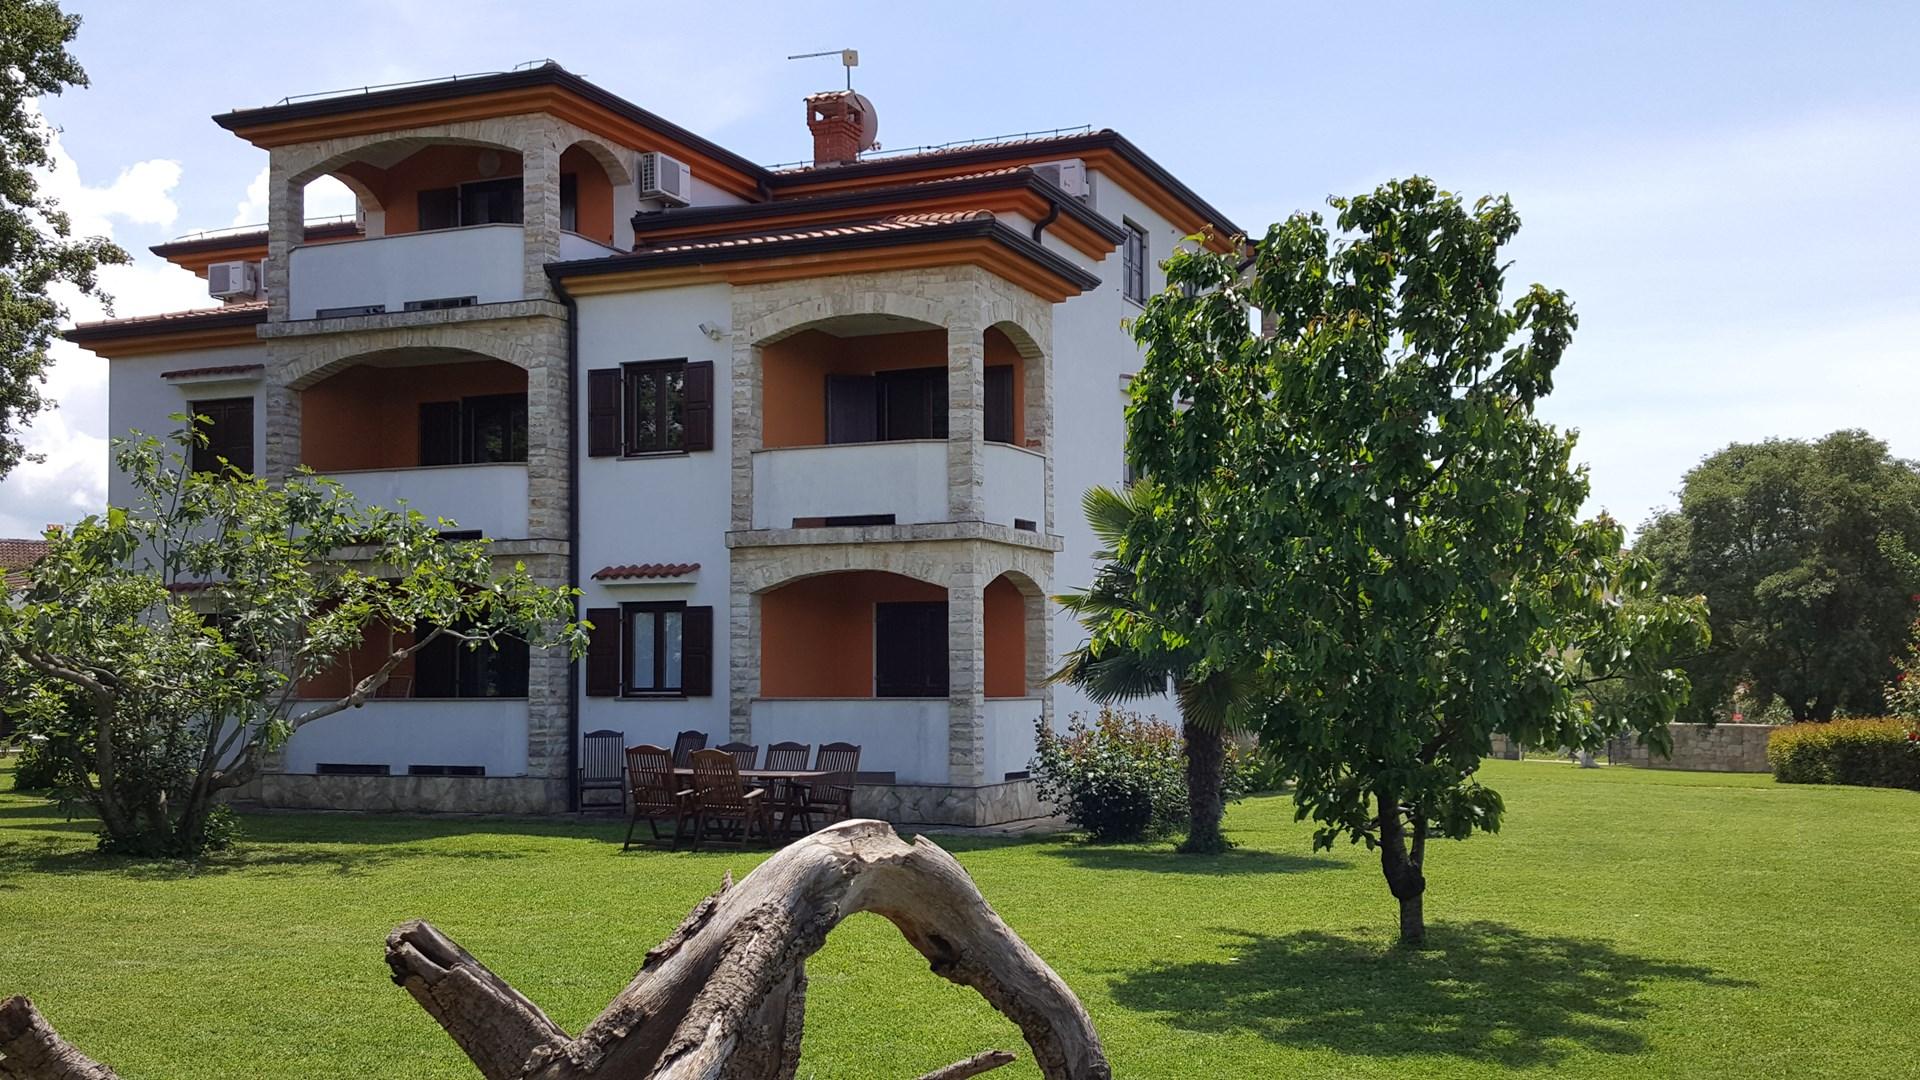 Appartement in Funtana mit Grill Ferienwohnung in Kroatien